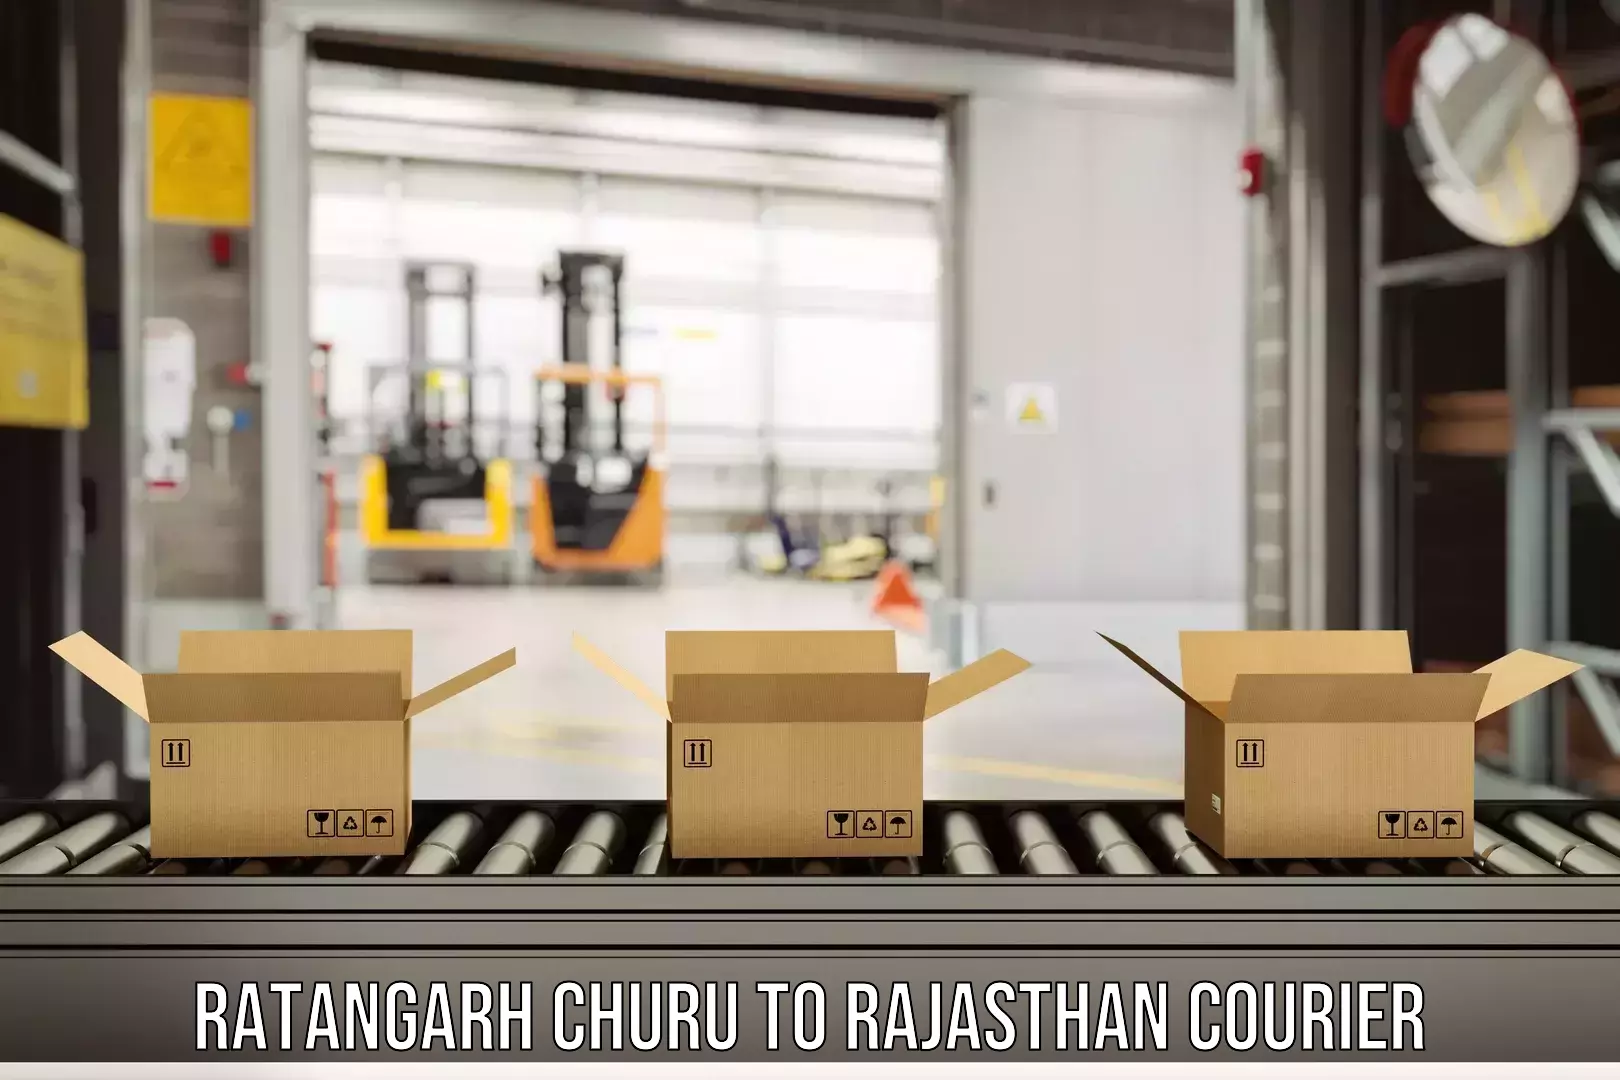 Nationwide shipping capabilities Ratangarh Churu to IIT Jodhpur